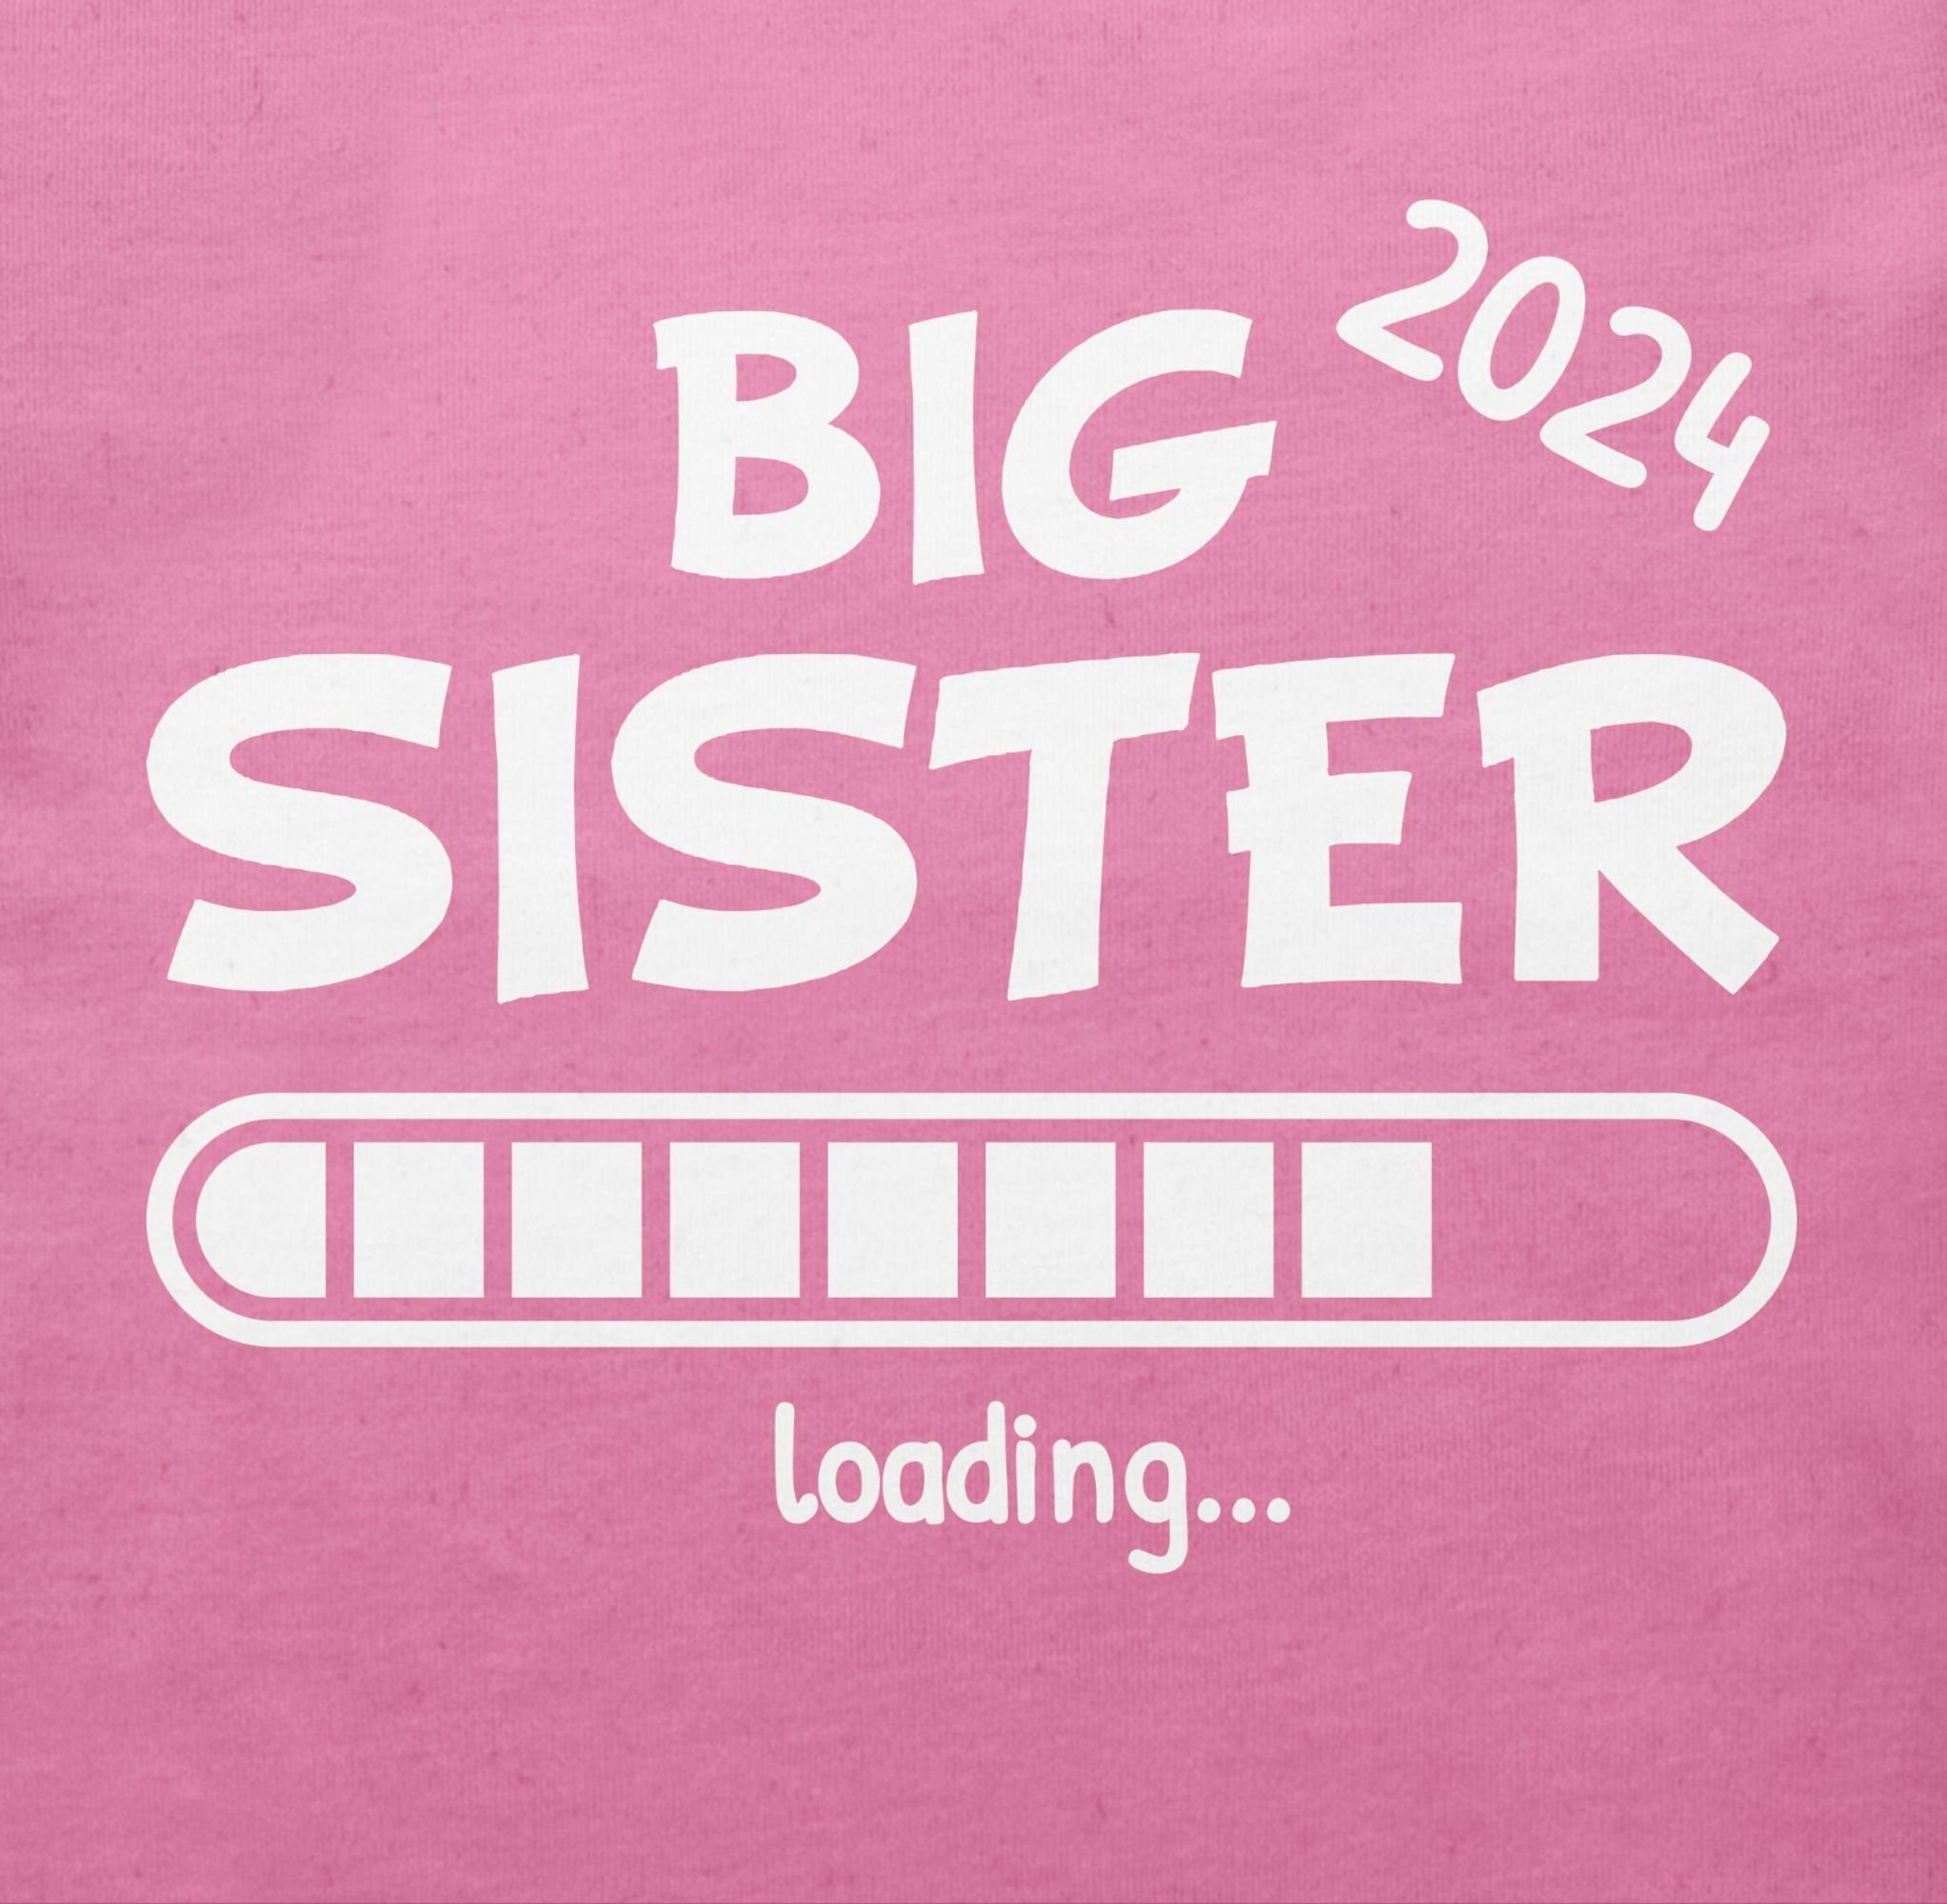 Shirtracer Sister Pink Big Geschwister Schwester loading T-Shirt 2024 1 und Bruder